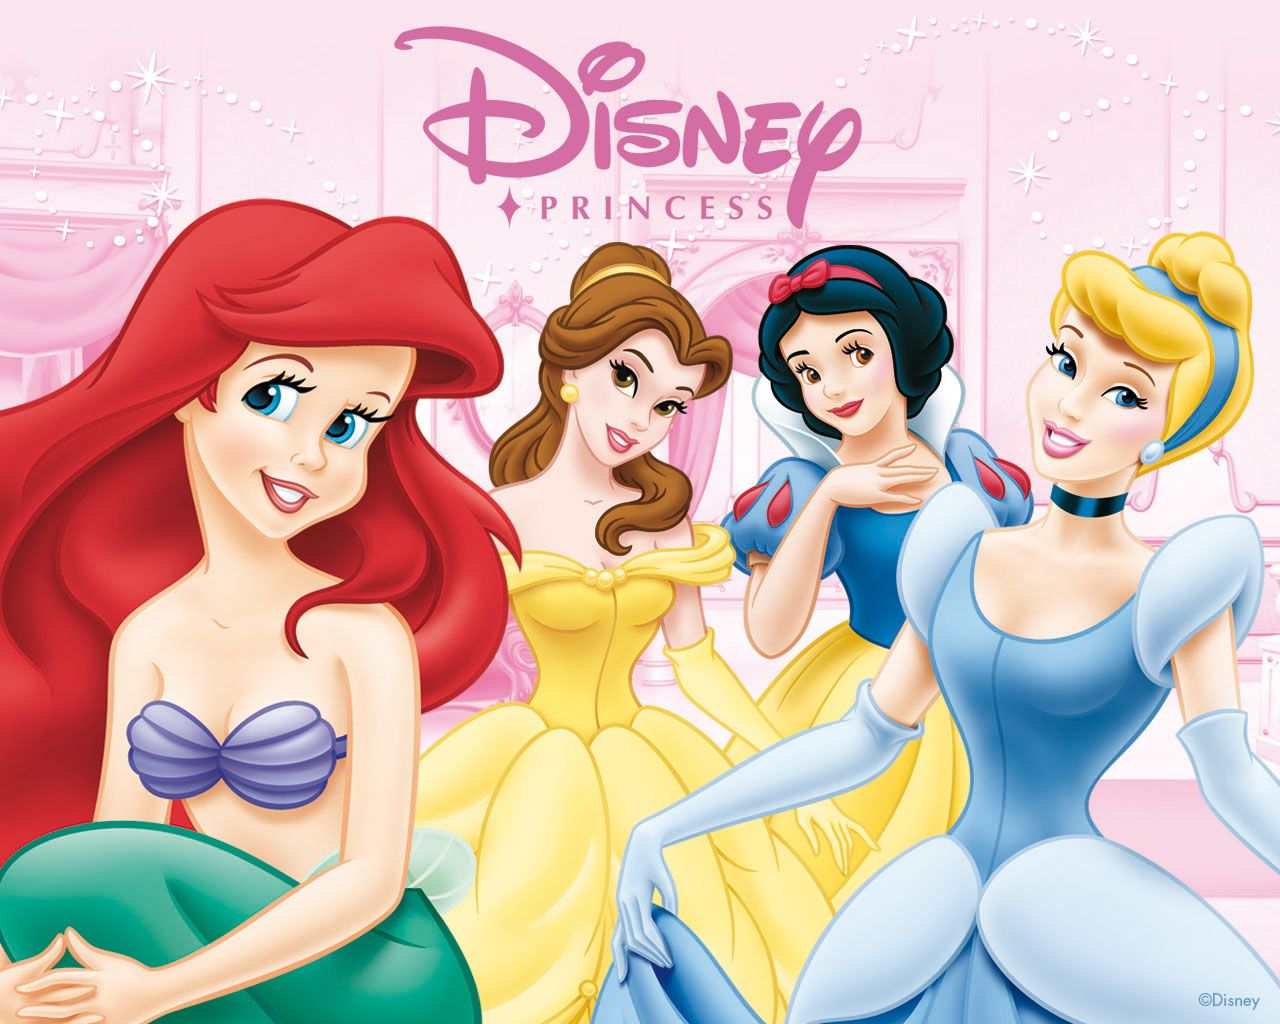 disney princess. Disney Princess Princess Wallpaper fancl. Disney princess wallpaper, Disney princess picture, Walt disney princesses